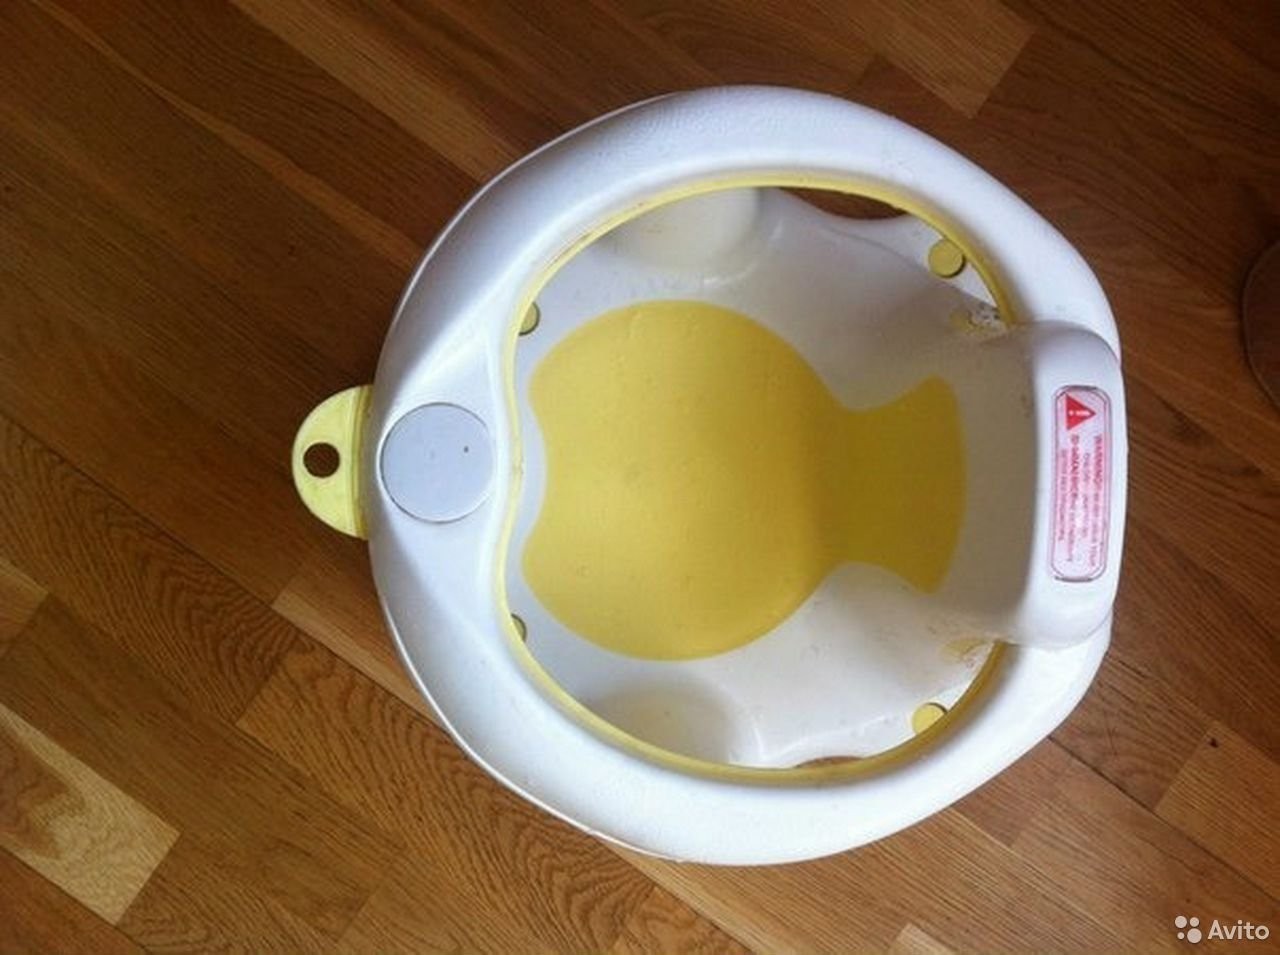 Стул детский для купания малыша babyton б/у белый желтый пластик на присосках товары для детей малыш в городе Москва, фото 2, телефон продавца: +7 (905) 721-56-56